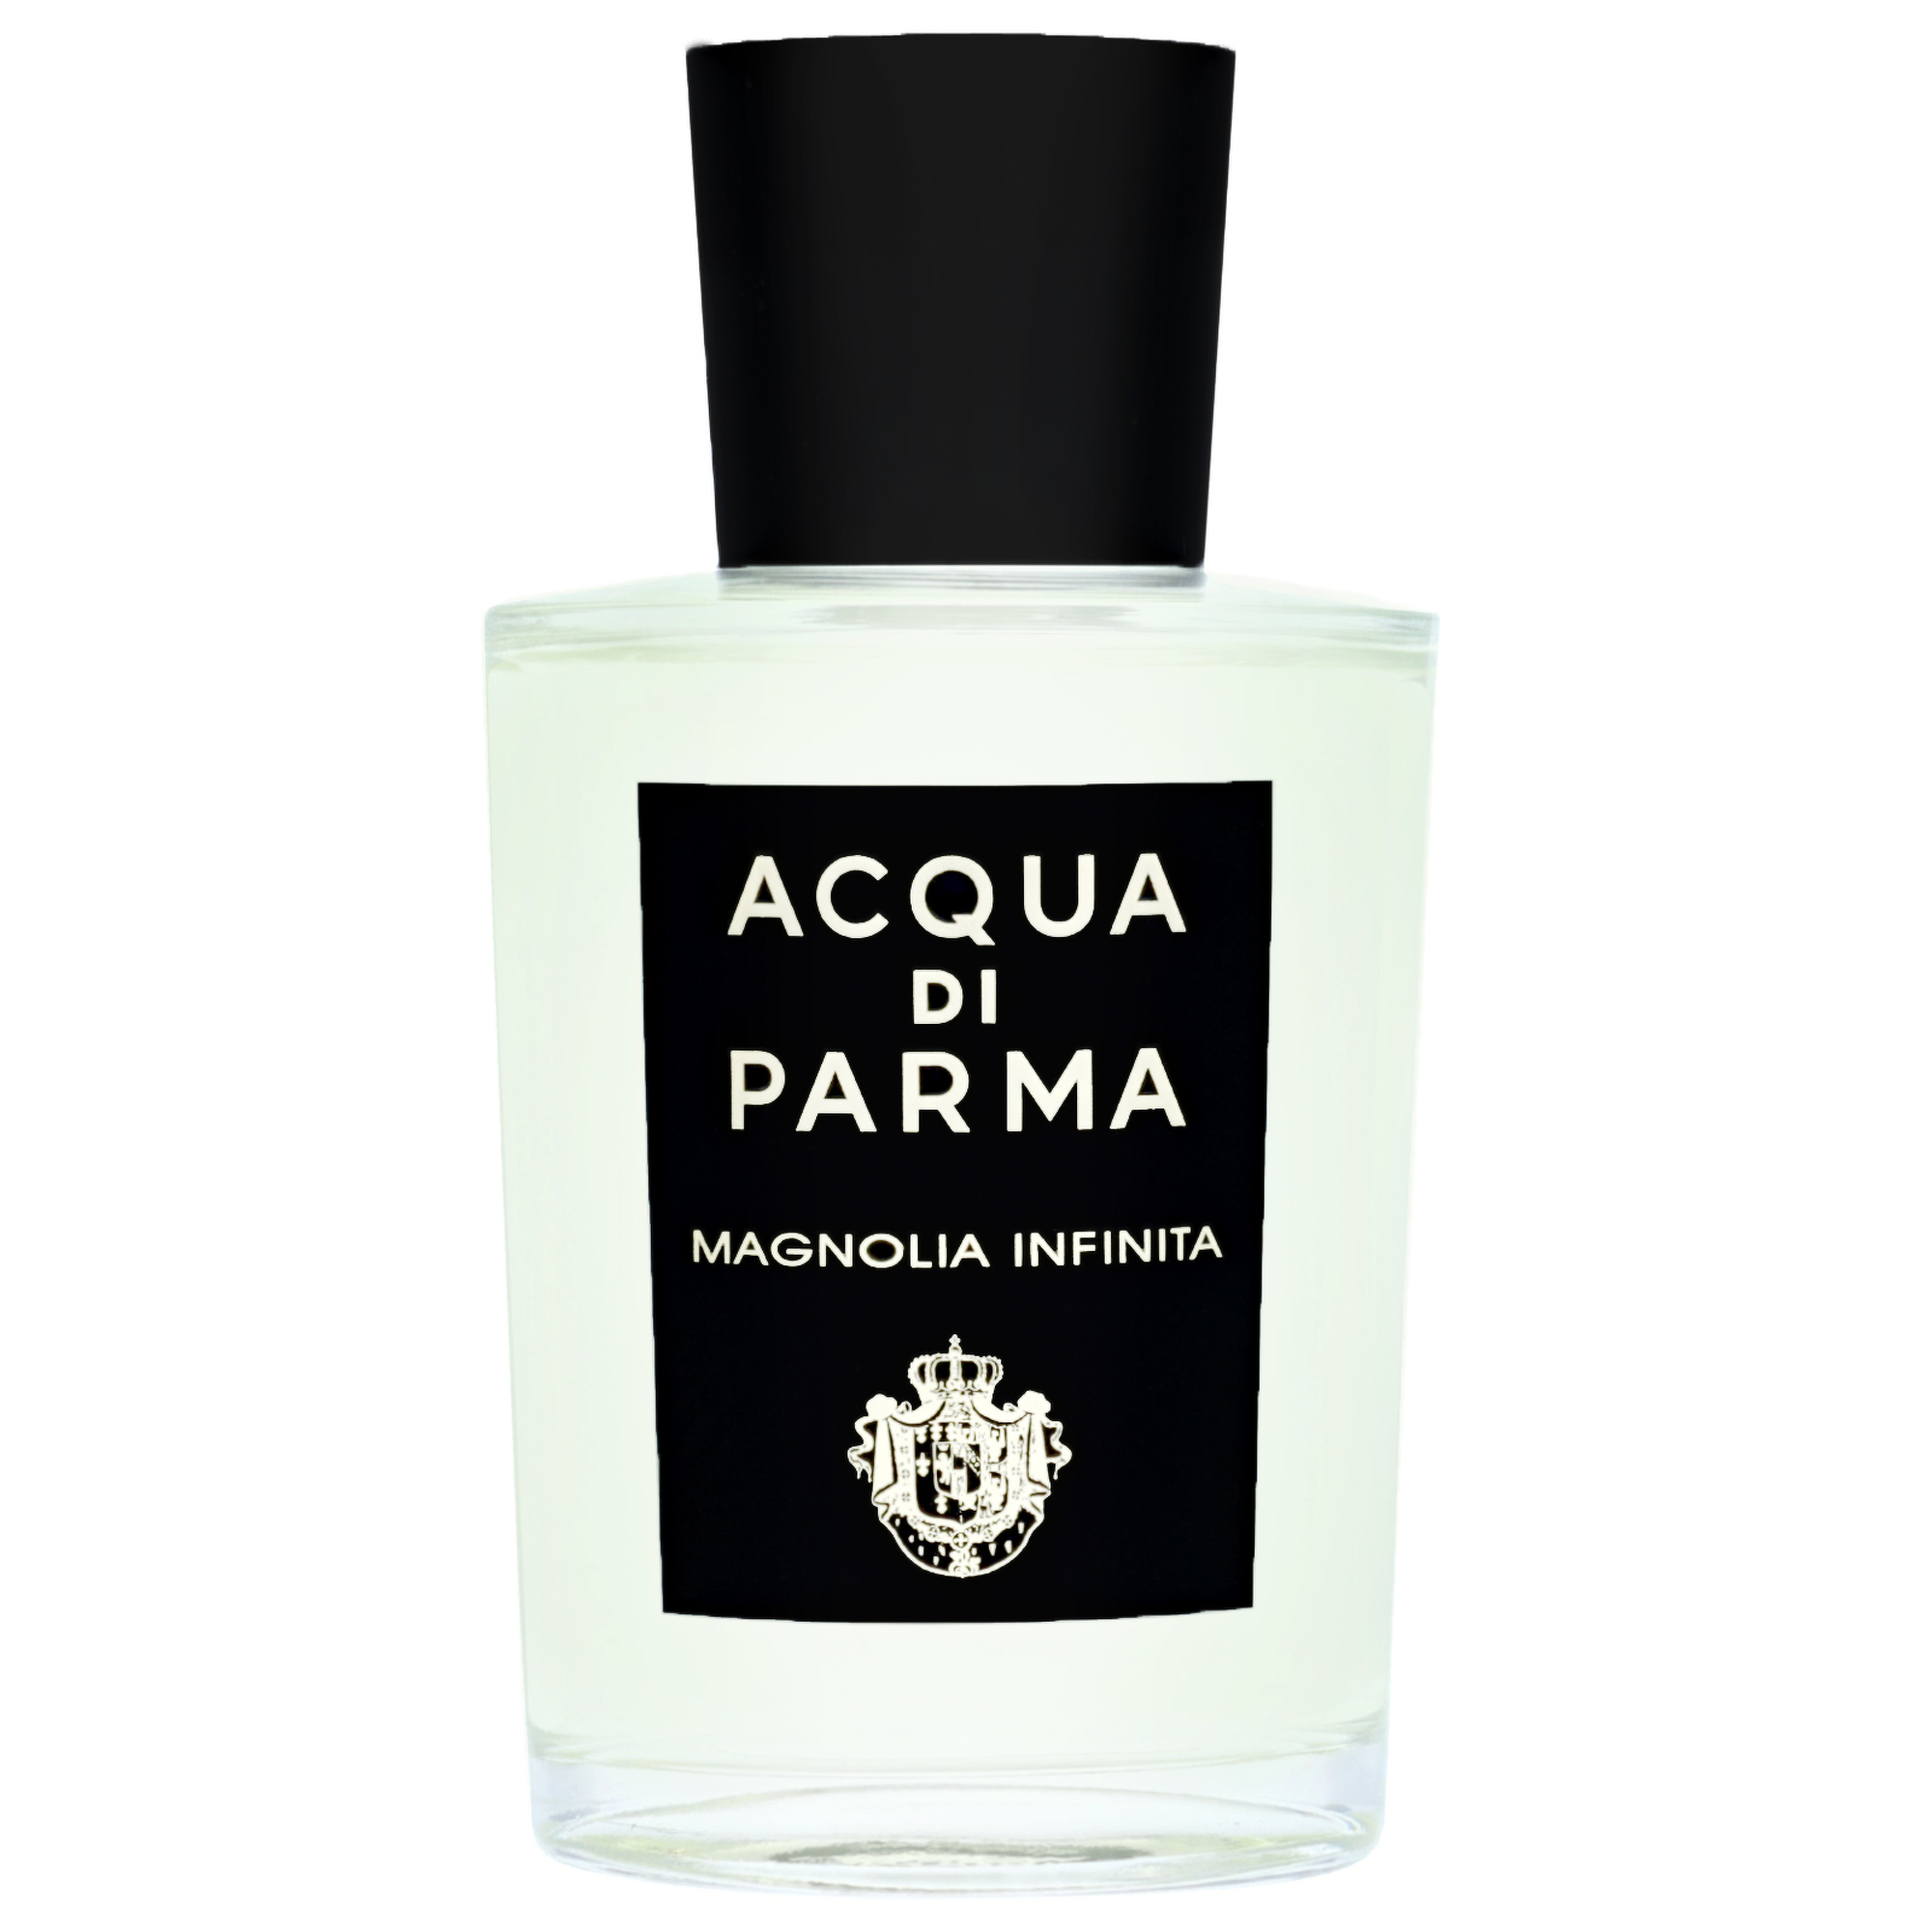 Acqua Di Parma Magnolia Infinita Eau de Parfum Spray 100ml